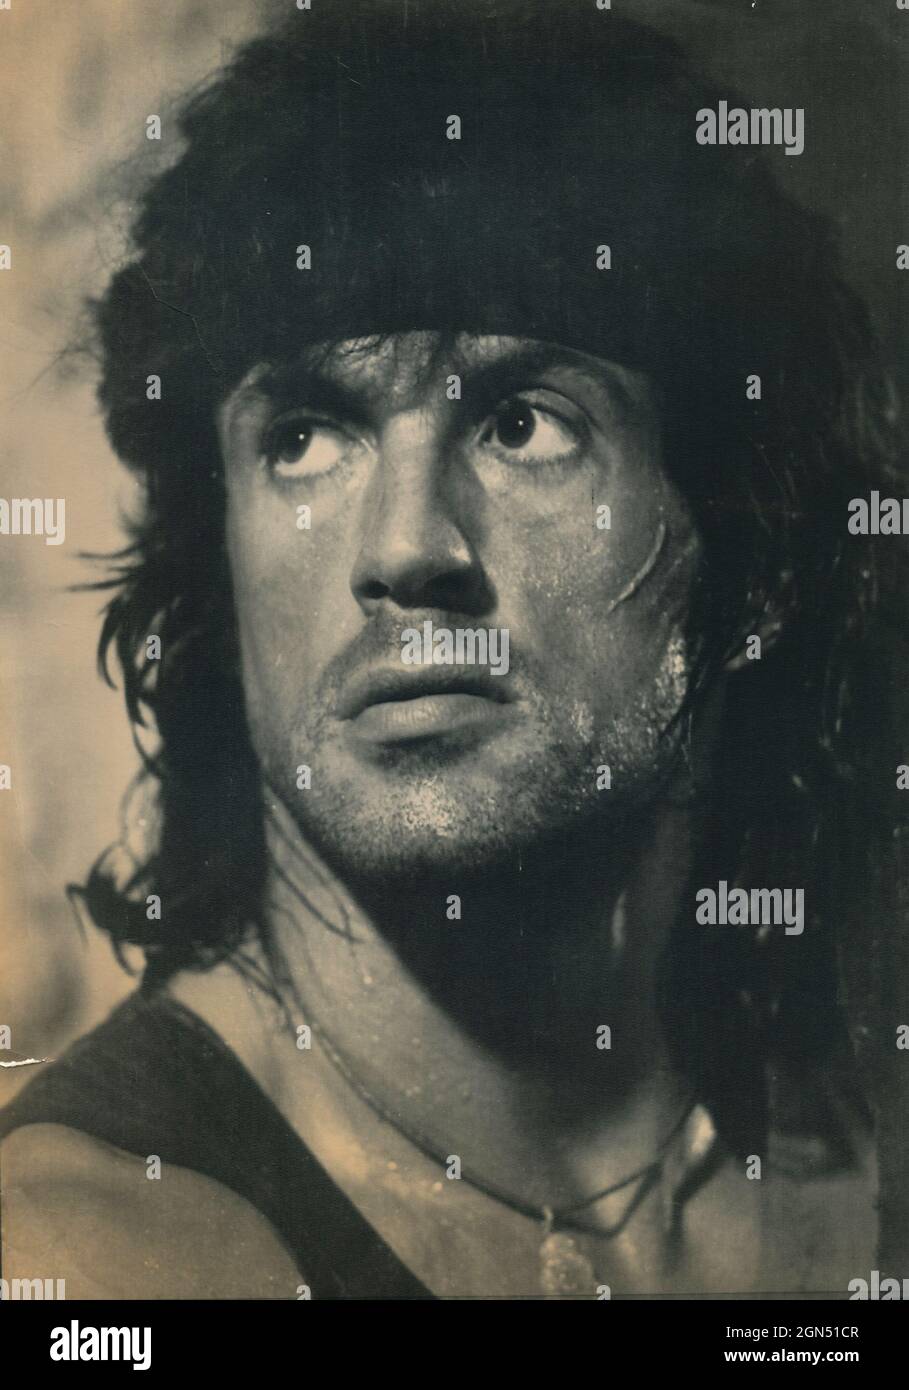 L'acteur américain Sylvester Stallone dans le film Rambo, 1989 Banque D'Images